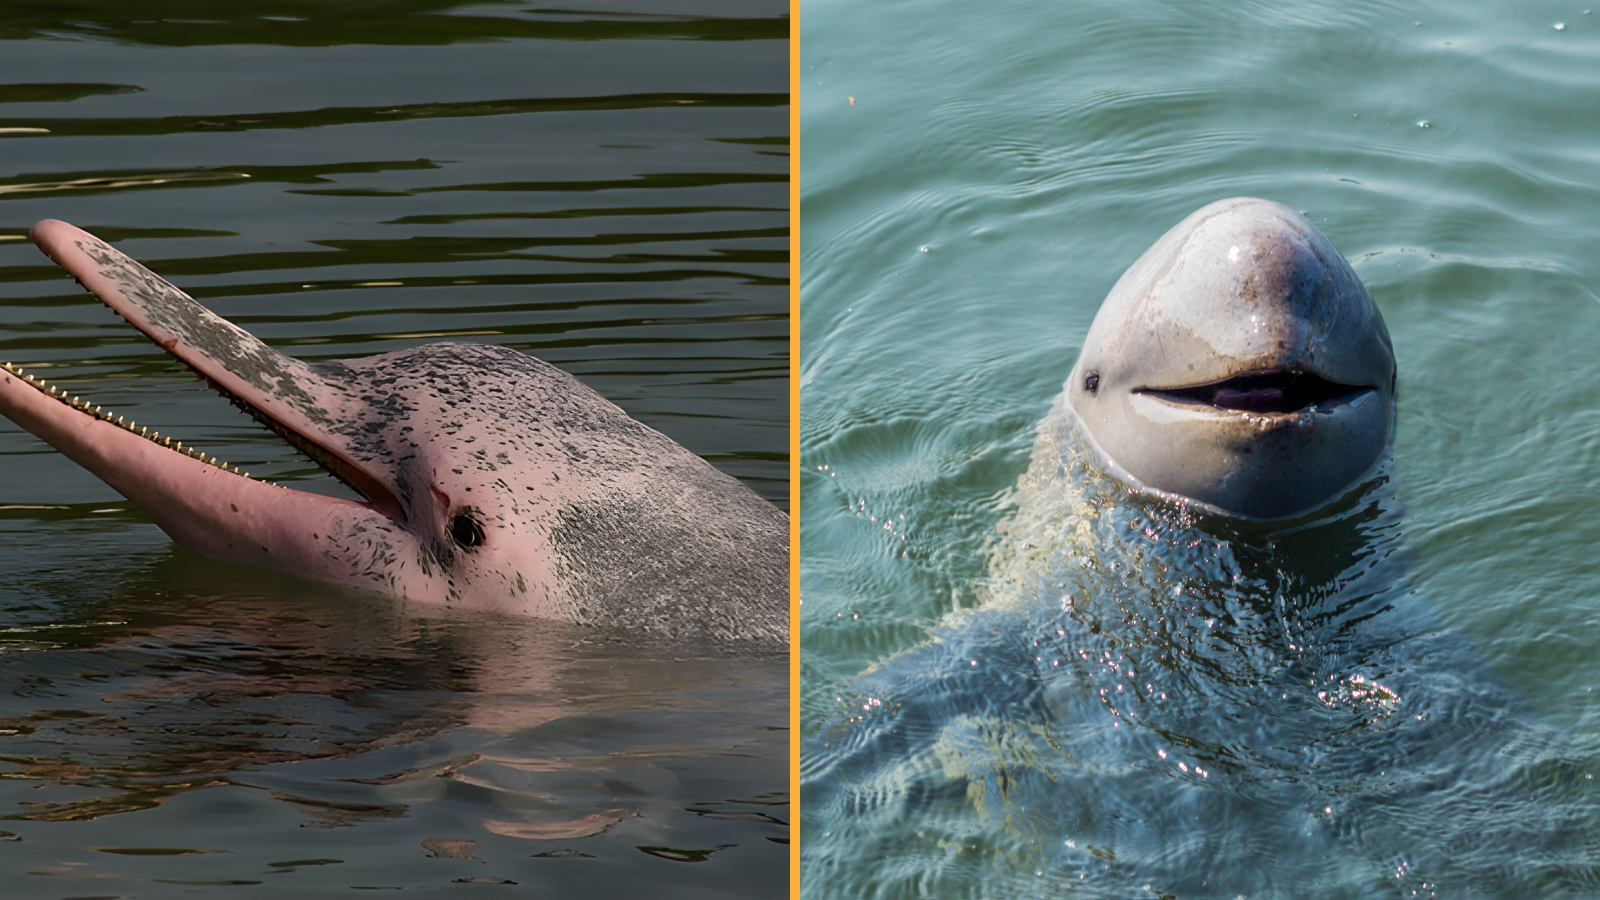 На левом изображении изображен дельфин Индо-Тихоокеанского региона, на правом изображении — дельфин Ирривадди.